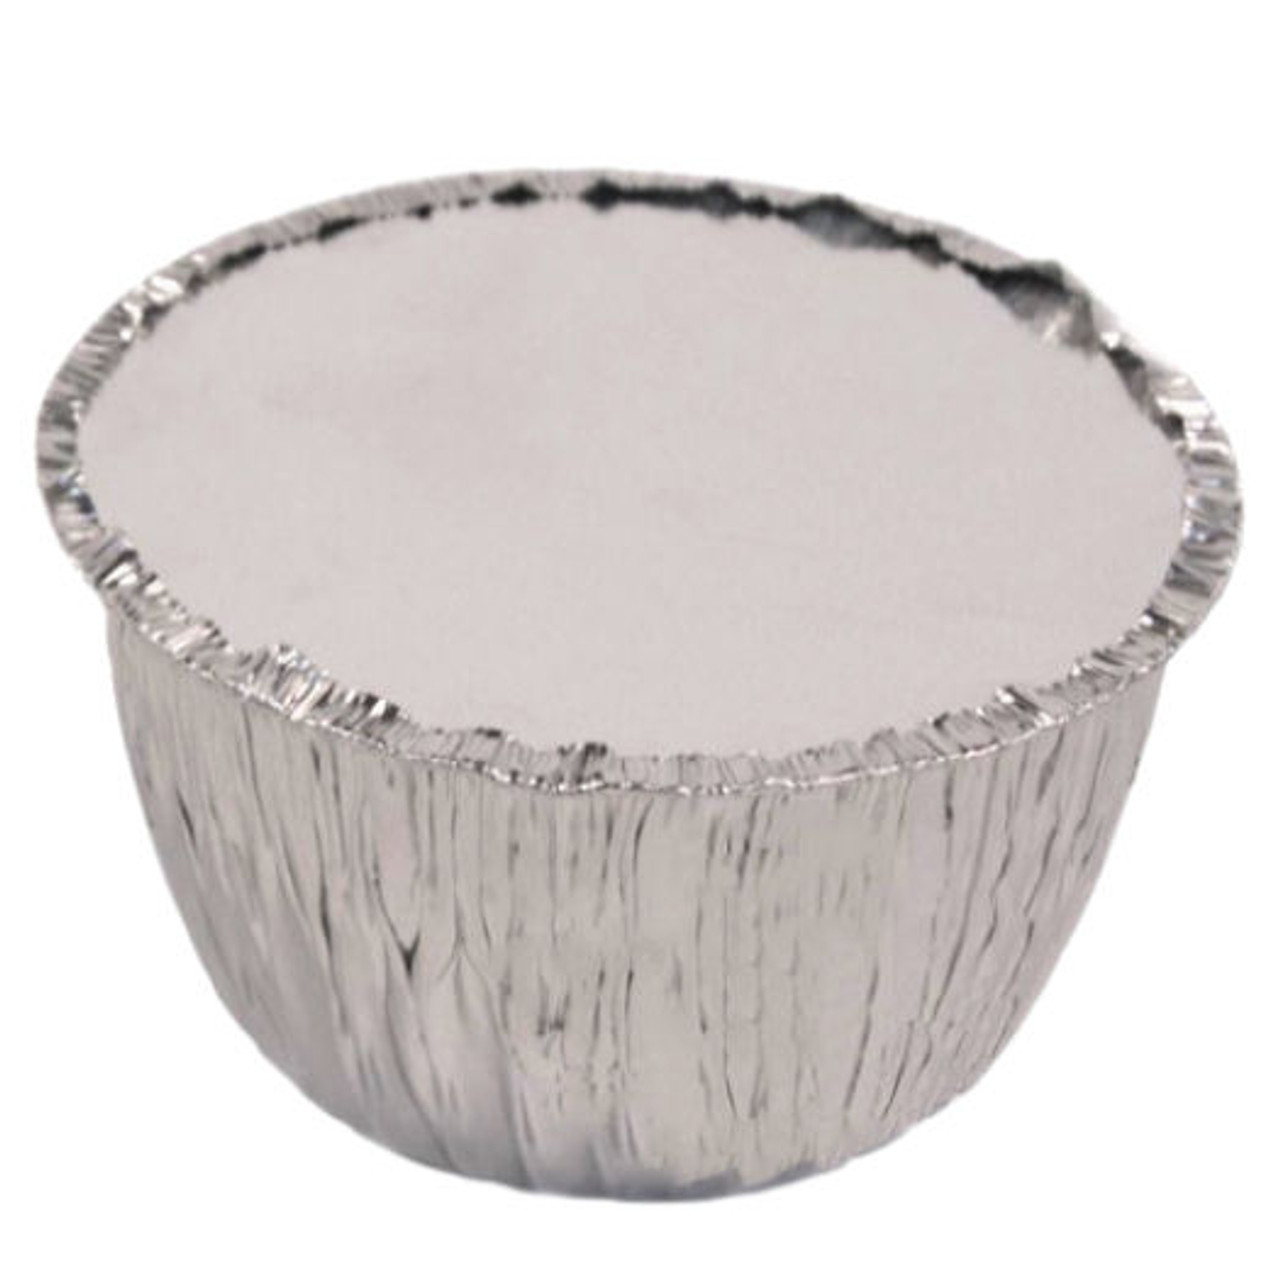 2lb size Aluminium Foil Pudding BASINS AND LID ( see qty options )